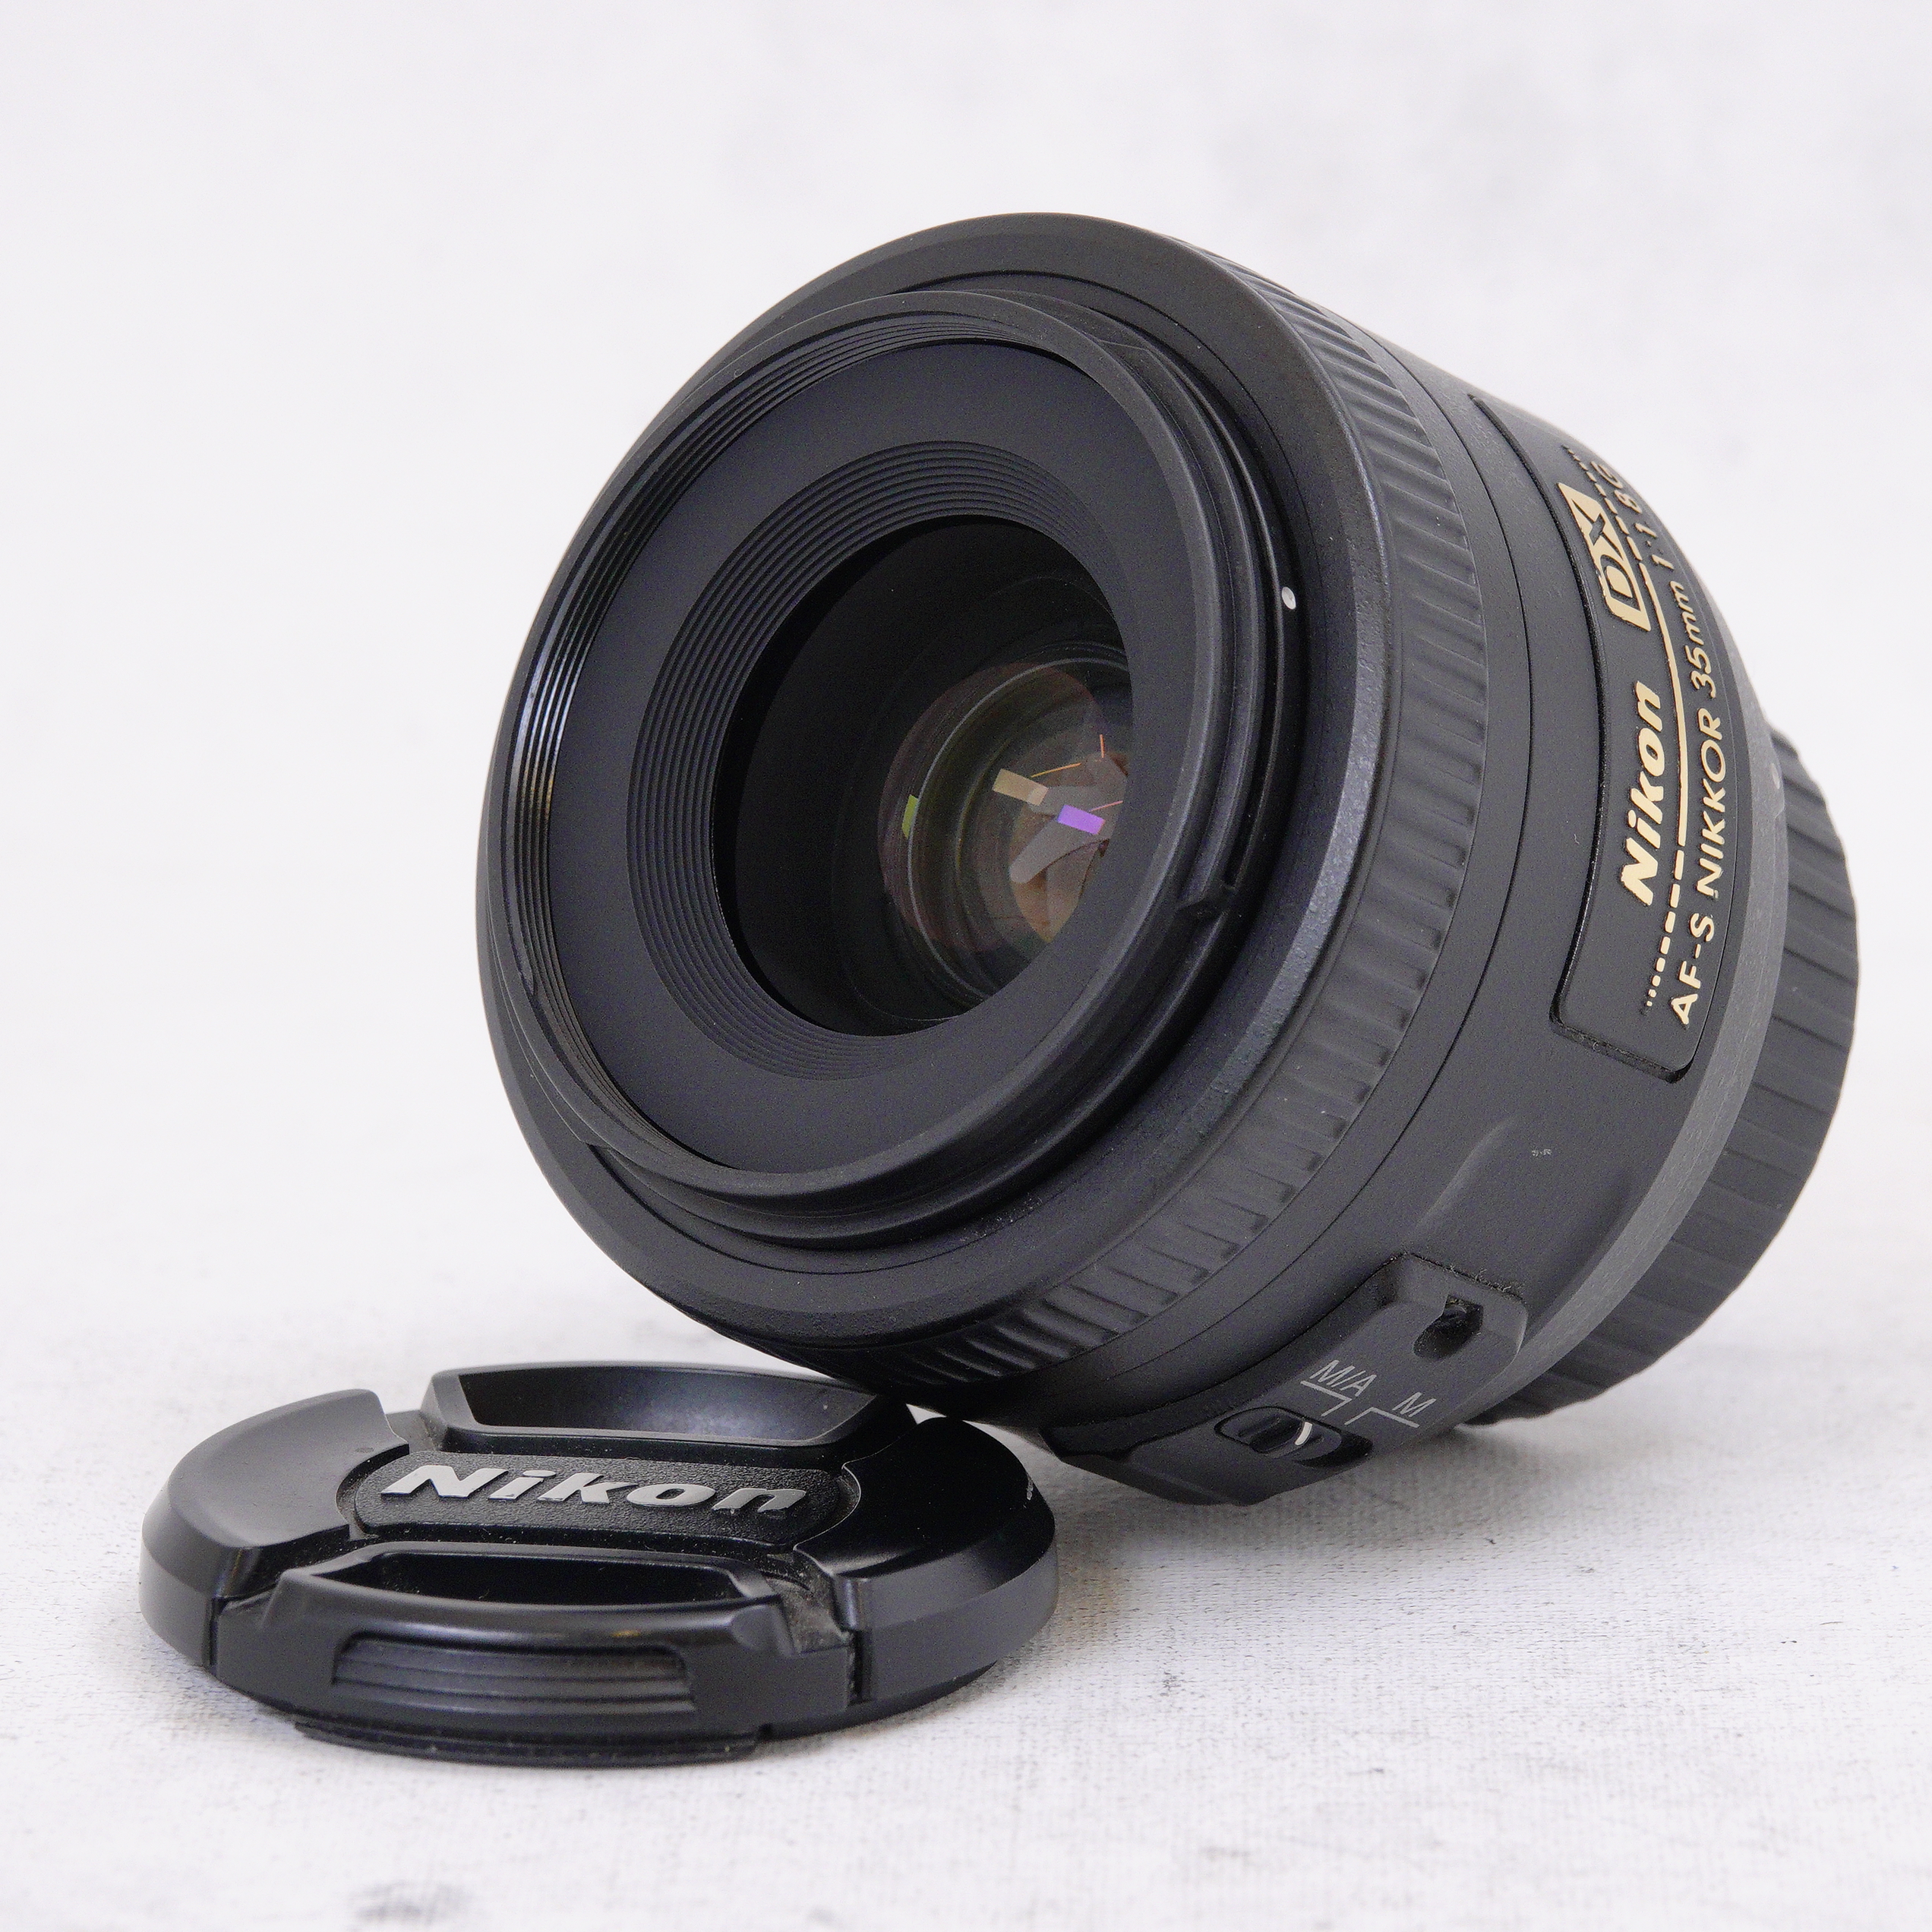 Nikon AF-S DX NIKKOR 35mm f1.8G - Usado